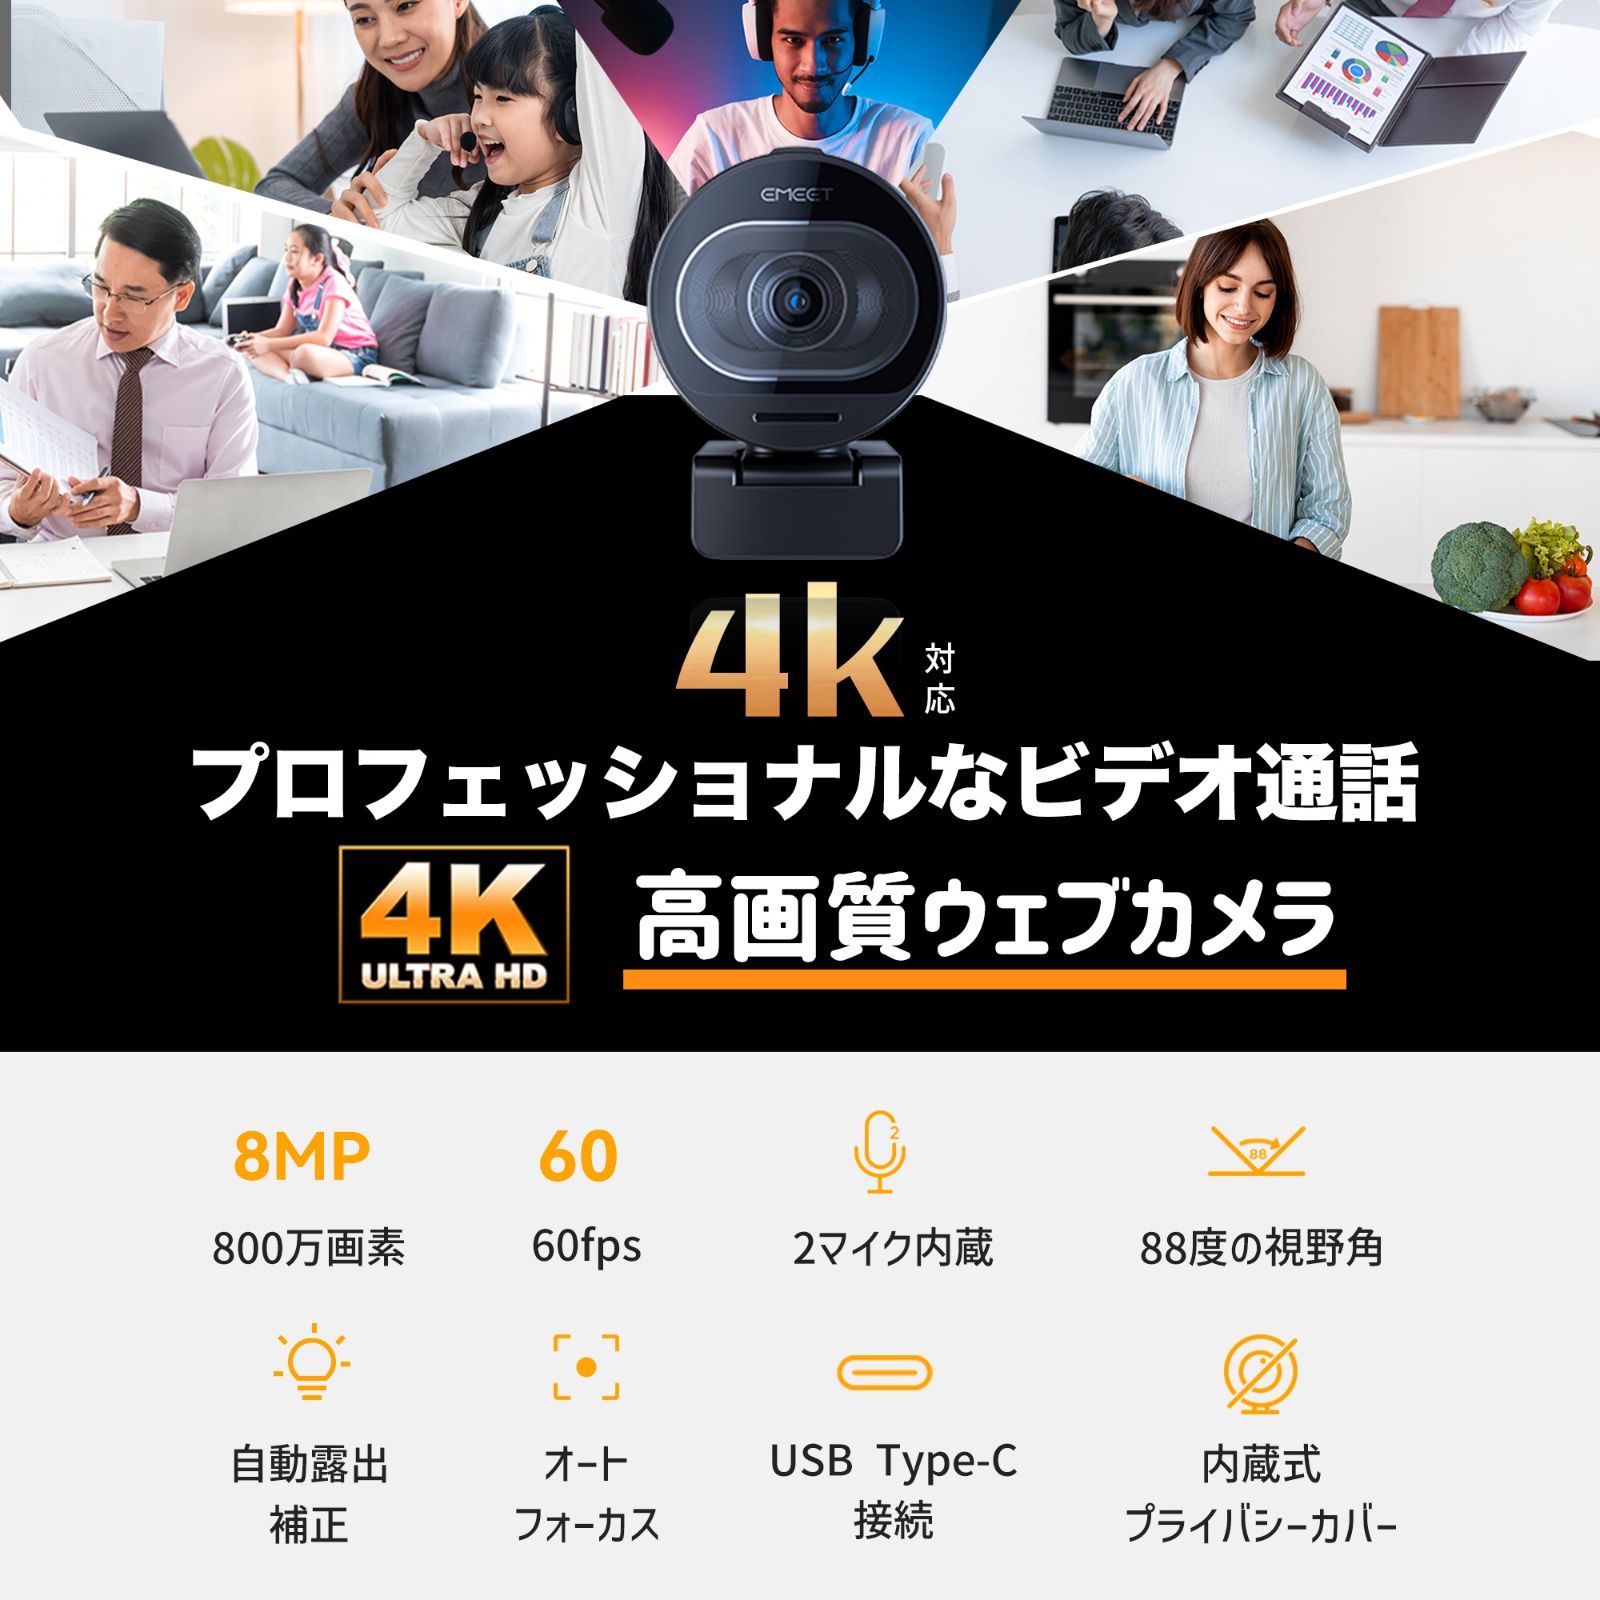 【夏セール実施中|日本正規販売店|2年保証|特典付】 Emeet ウェブカメラ 4K対応 60fps Webカメラ S600 マイク内蔵 自動光補正 ドライバー不要 USBカメラ 小型 軽量ストリーミング ウェブ会議 ウェブカム テレワーク 動画配信 イミート-2